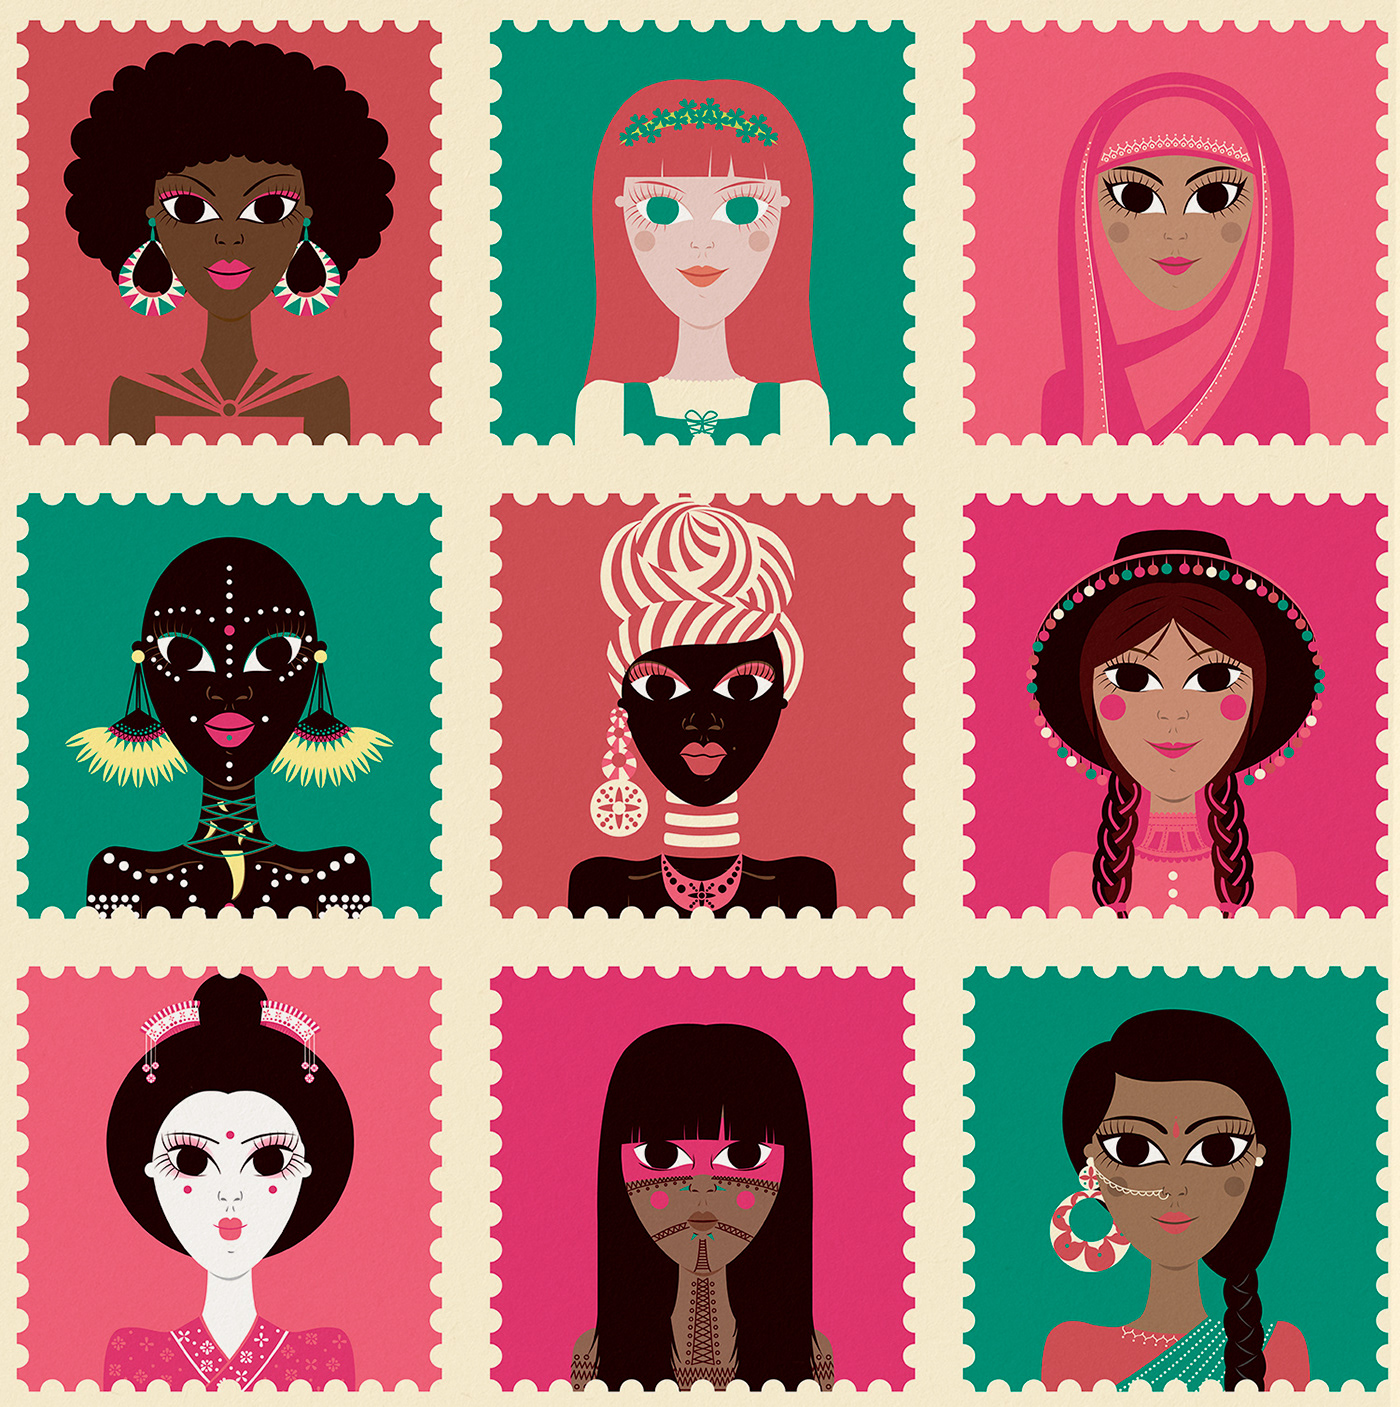 Black women children illustration Diversity Girl Power feminism editorial kids illustration Character design  flat illustration girl illustration